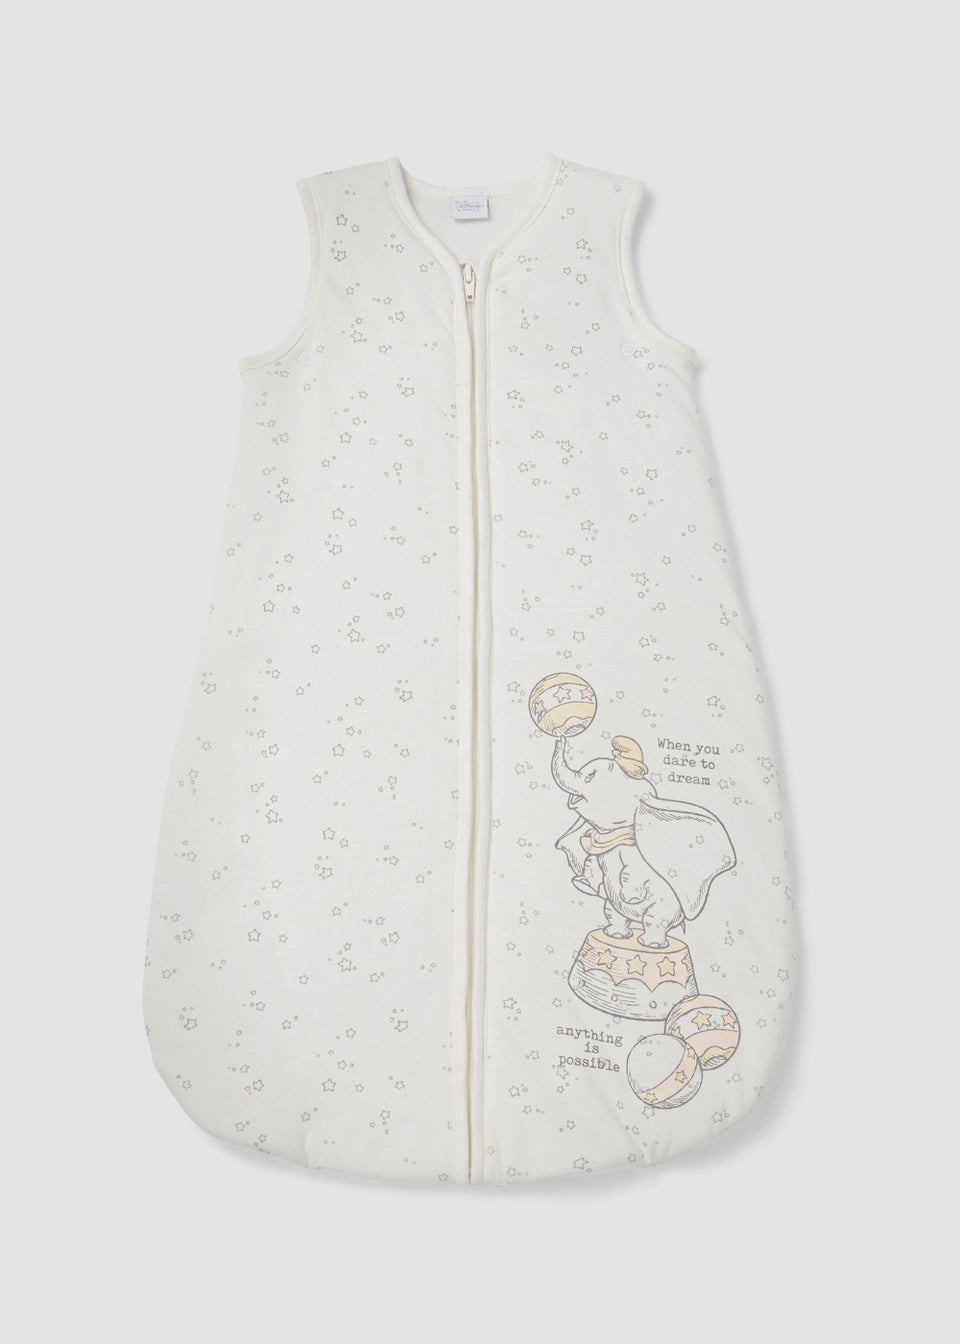 White Dumbo Baby Sleeping Bag 2.5 Tog (Newborn-18mths)